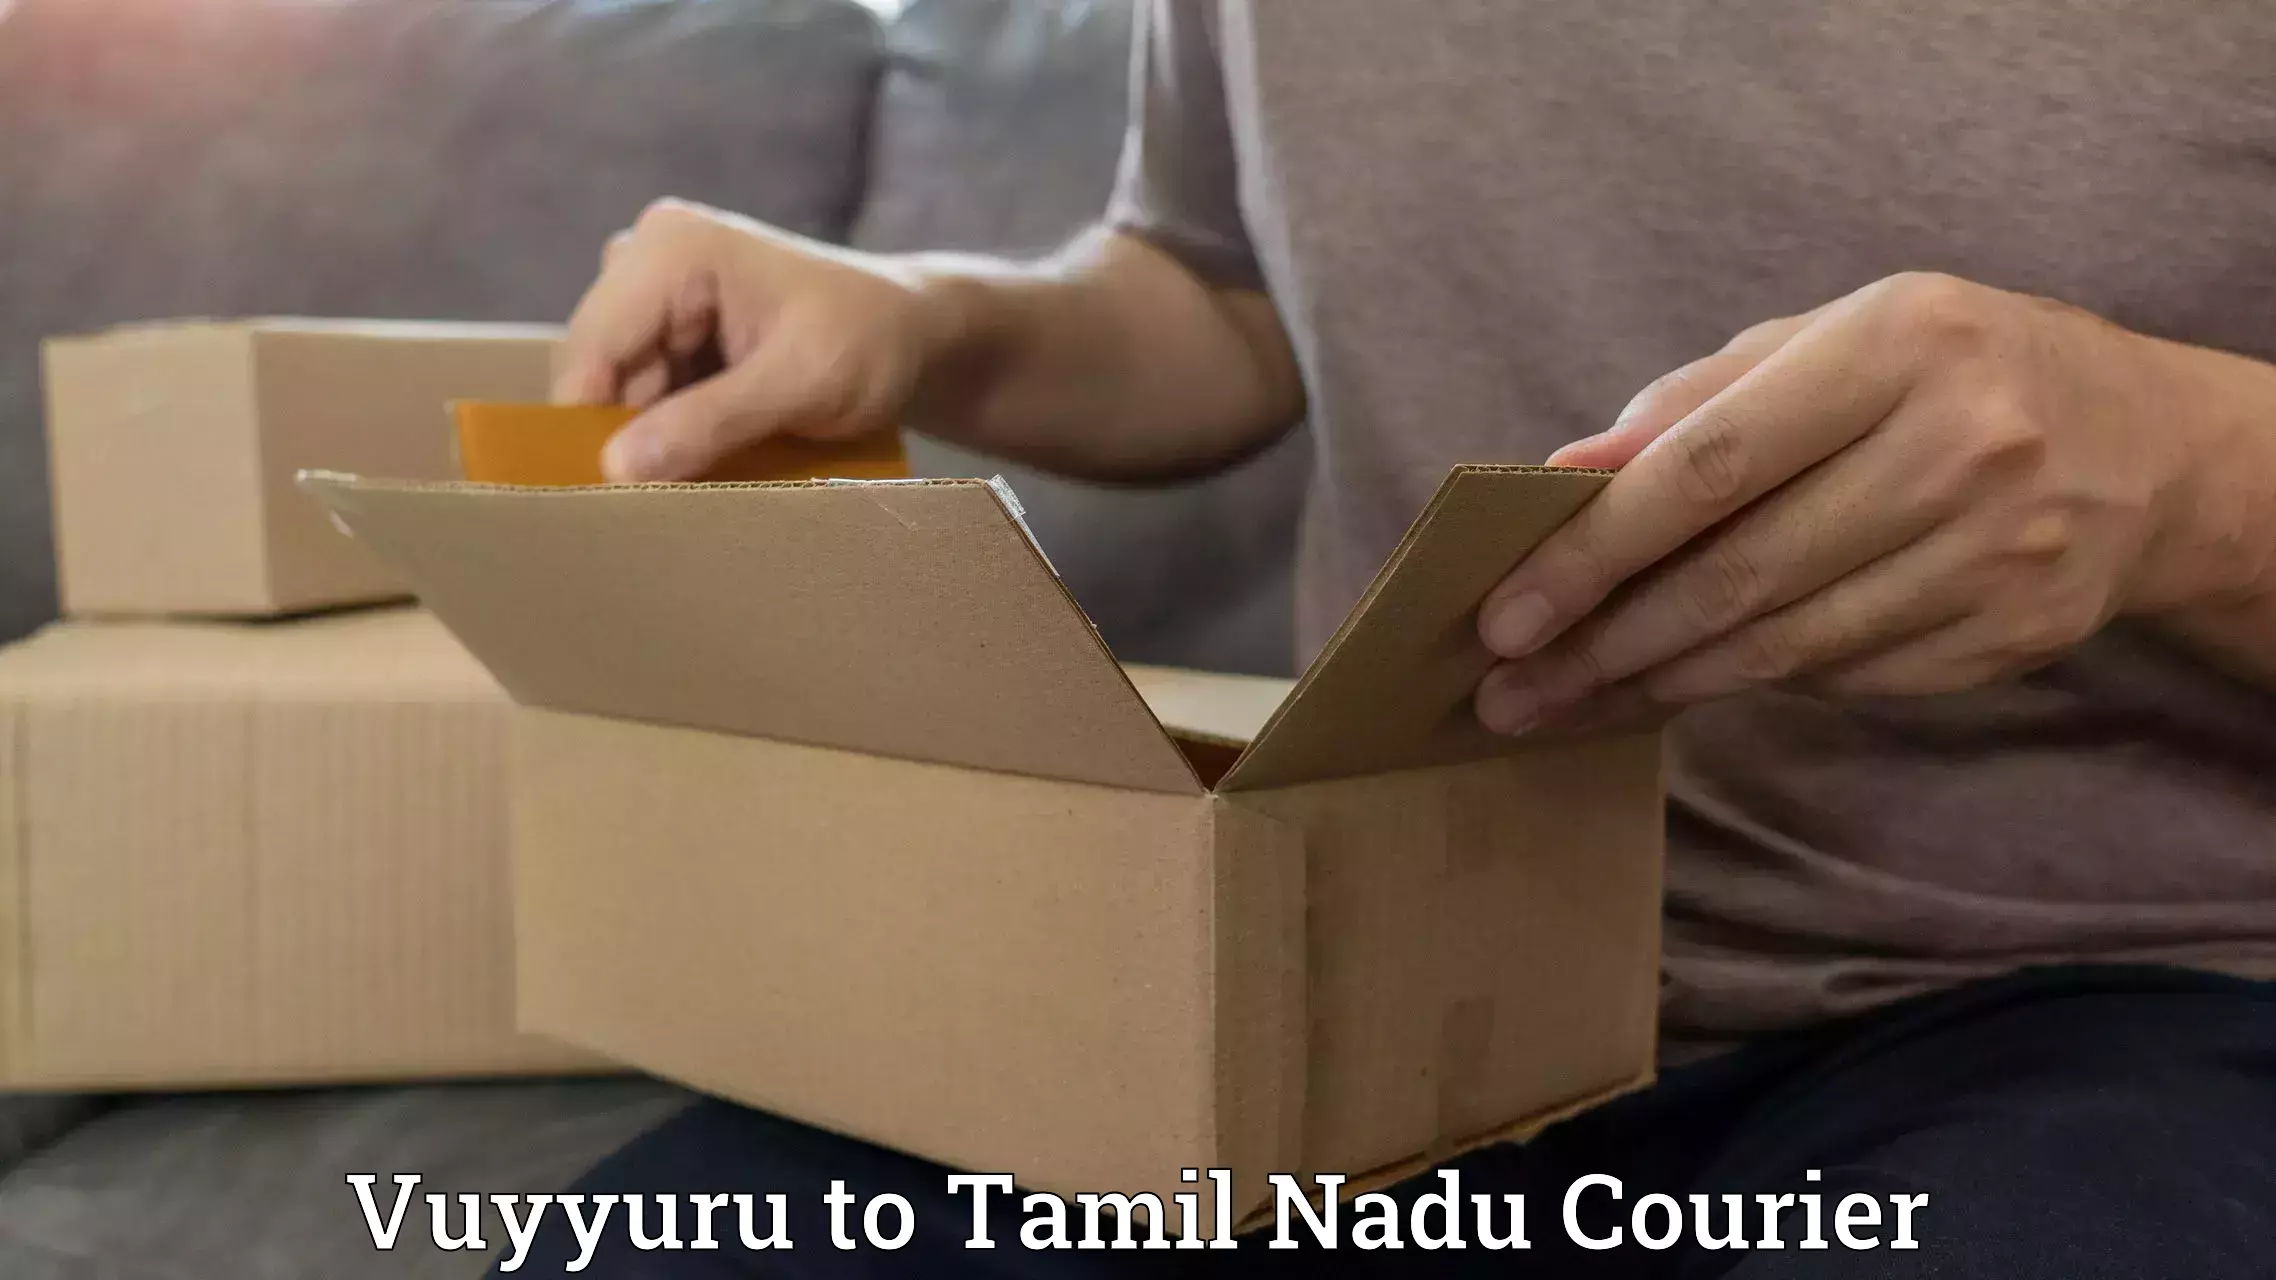 User-friendly courier app Vuyyuru to Amrita Vishwa Vidyapeetham Coimbatore